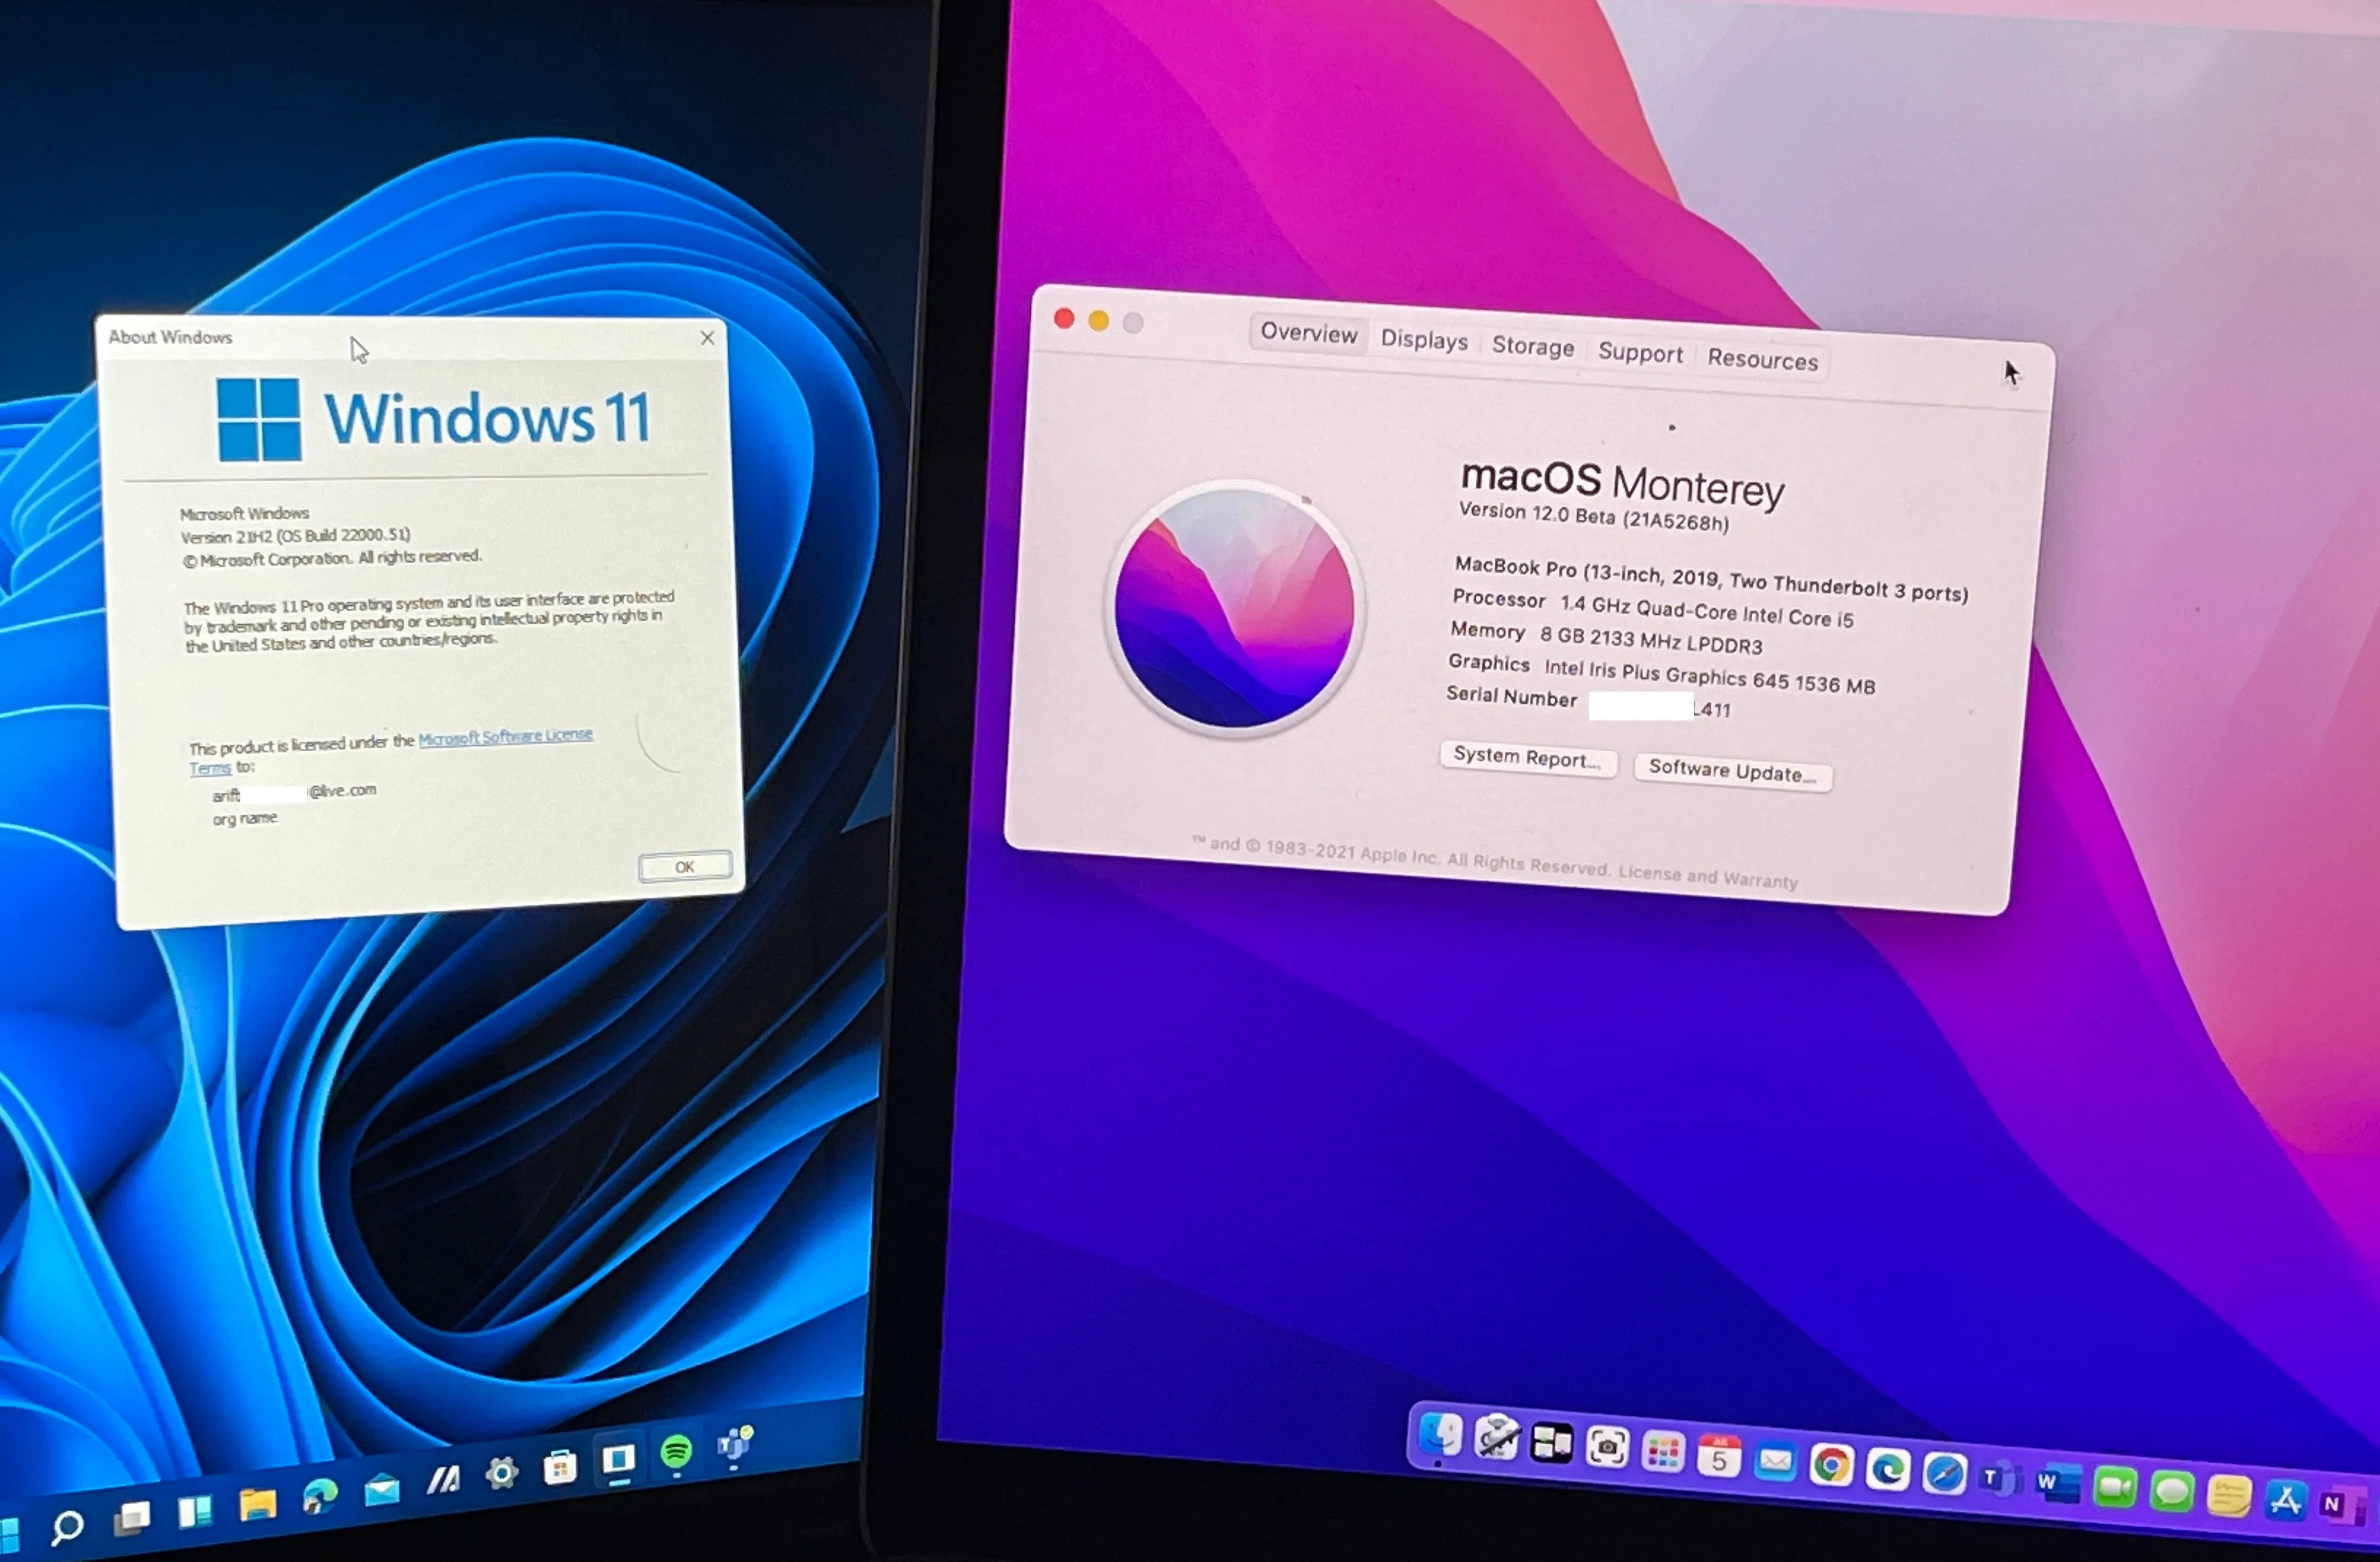 Страницы о MacOS Monterey и Windows 11 рядом